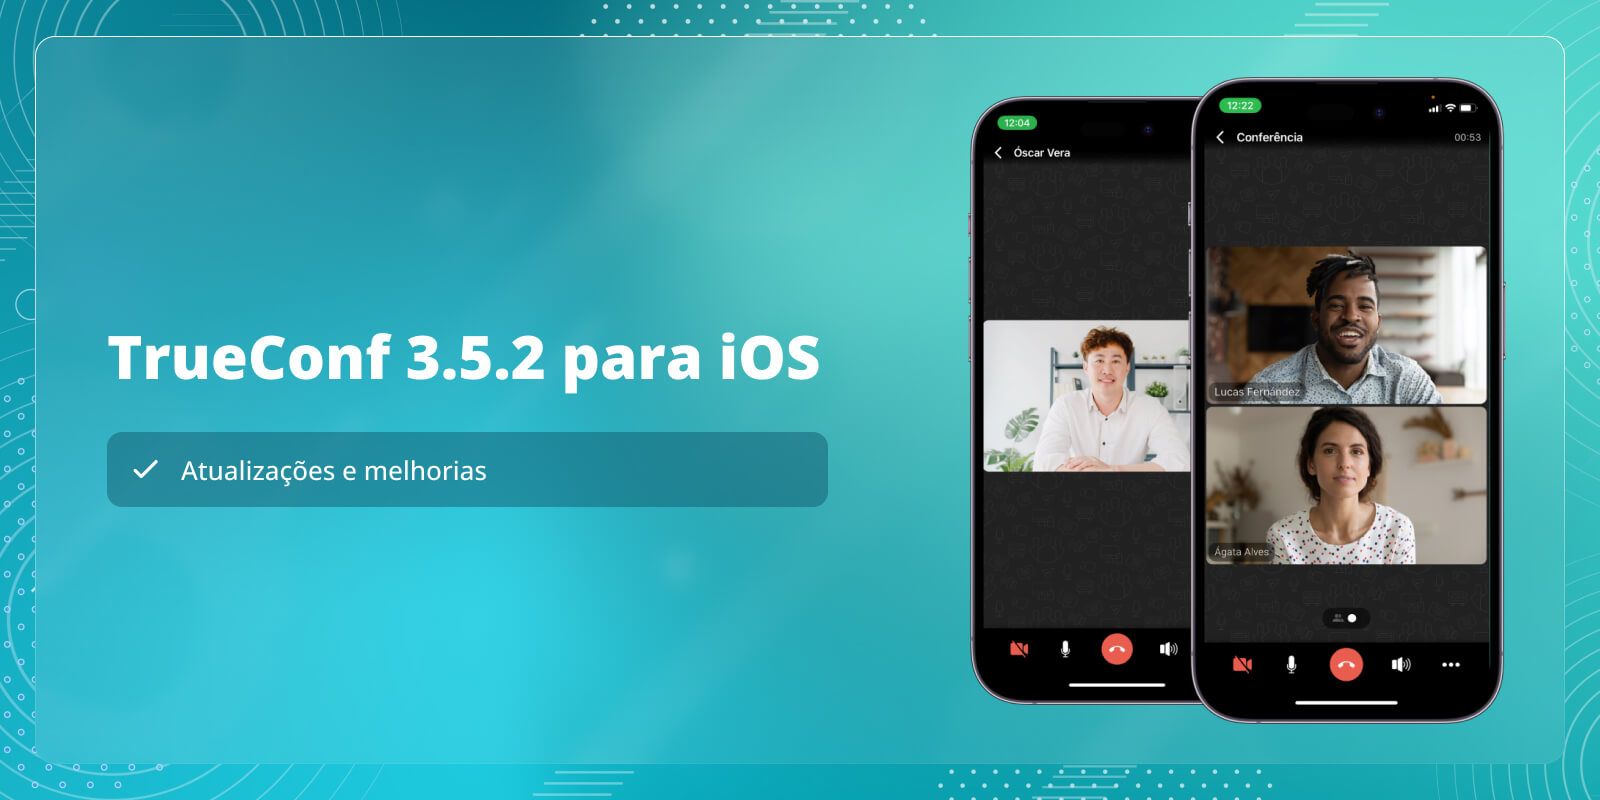 TrueConf 3.5.2 para iOS: atualizações e melhorias 4